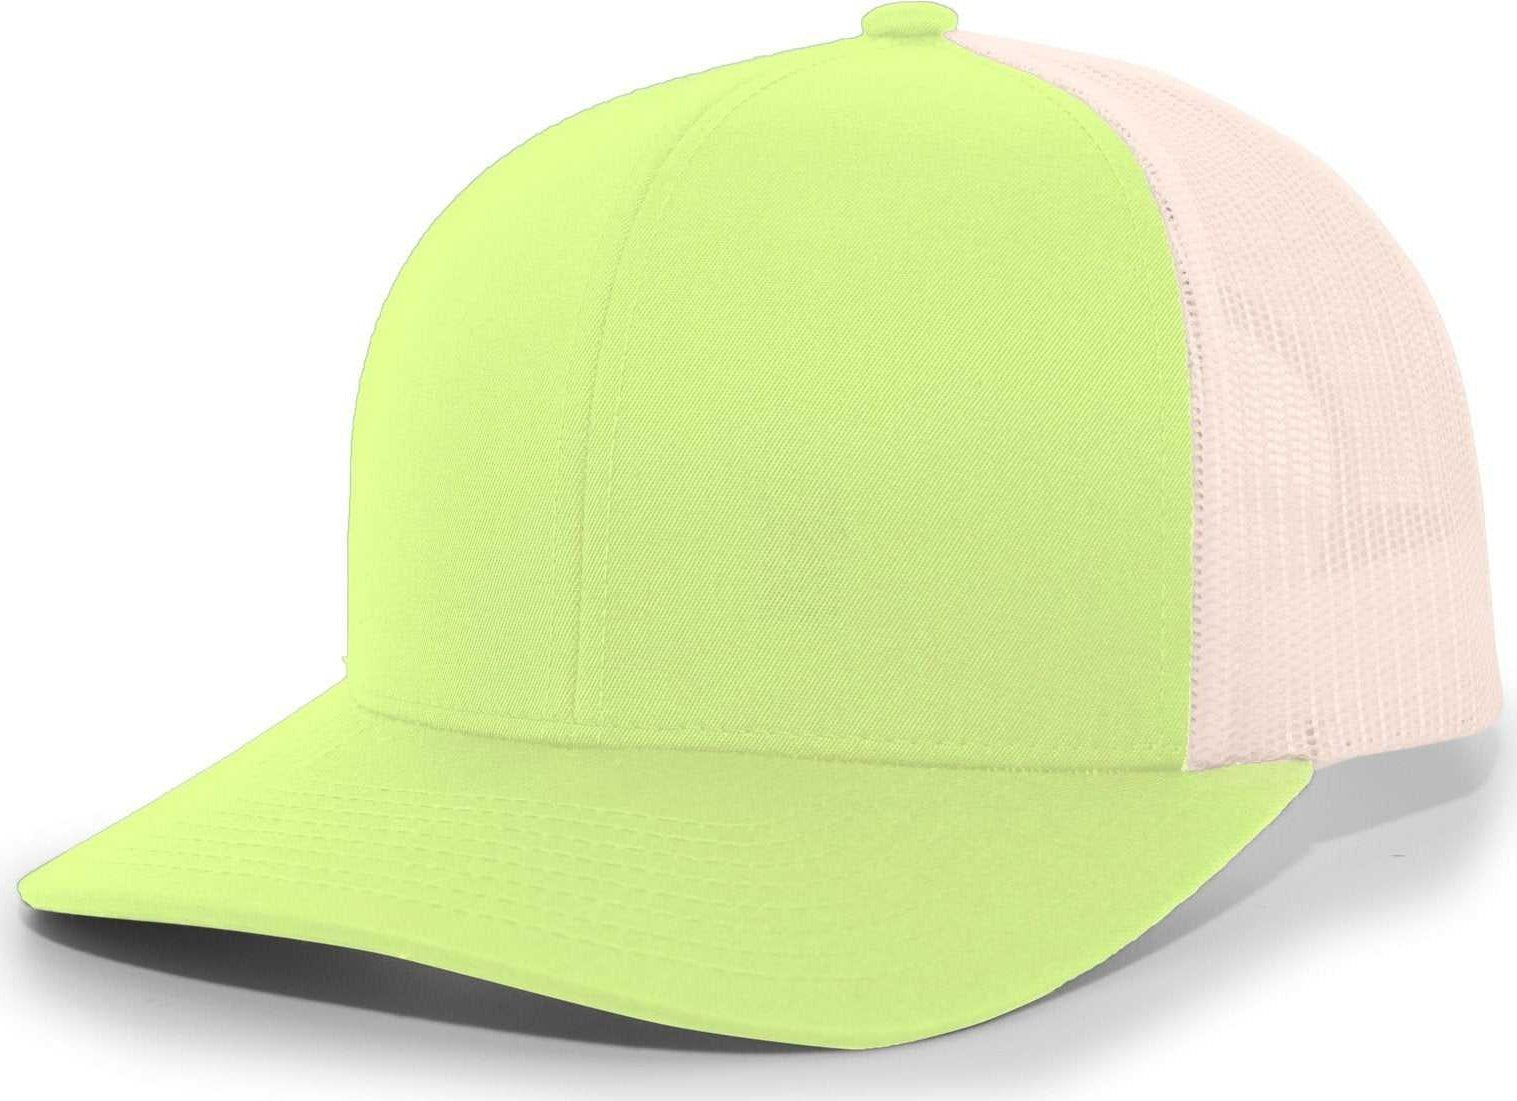 Pacific Headwear 104C Trucker Snapback Cap - Green Glow Beige - HIT a Double